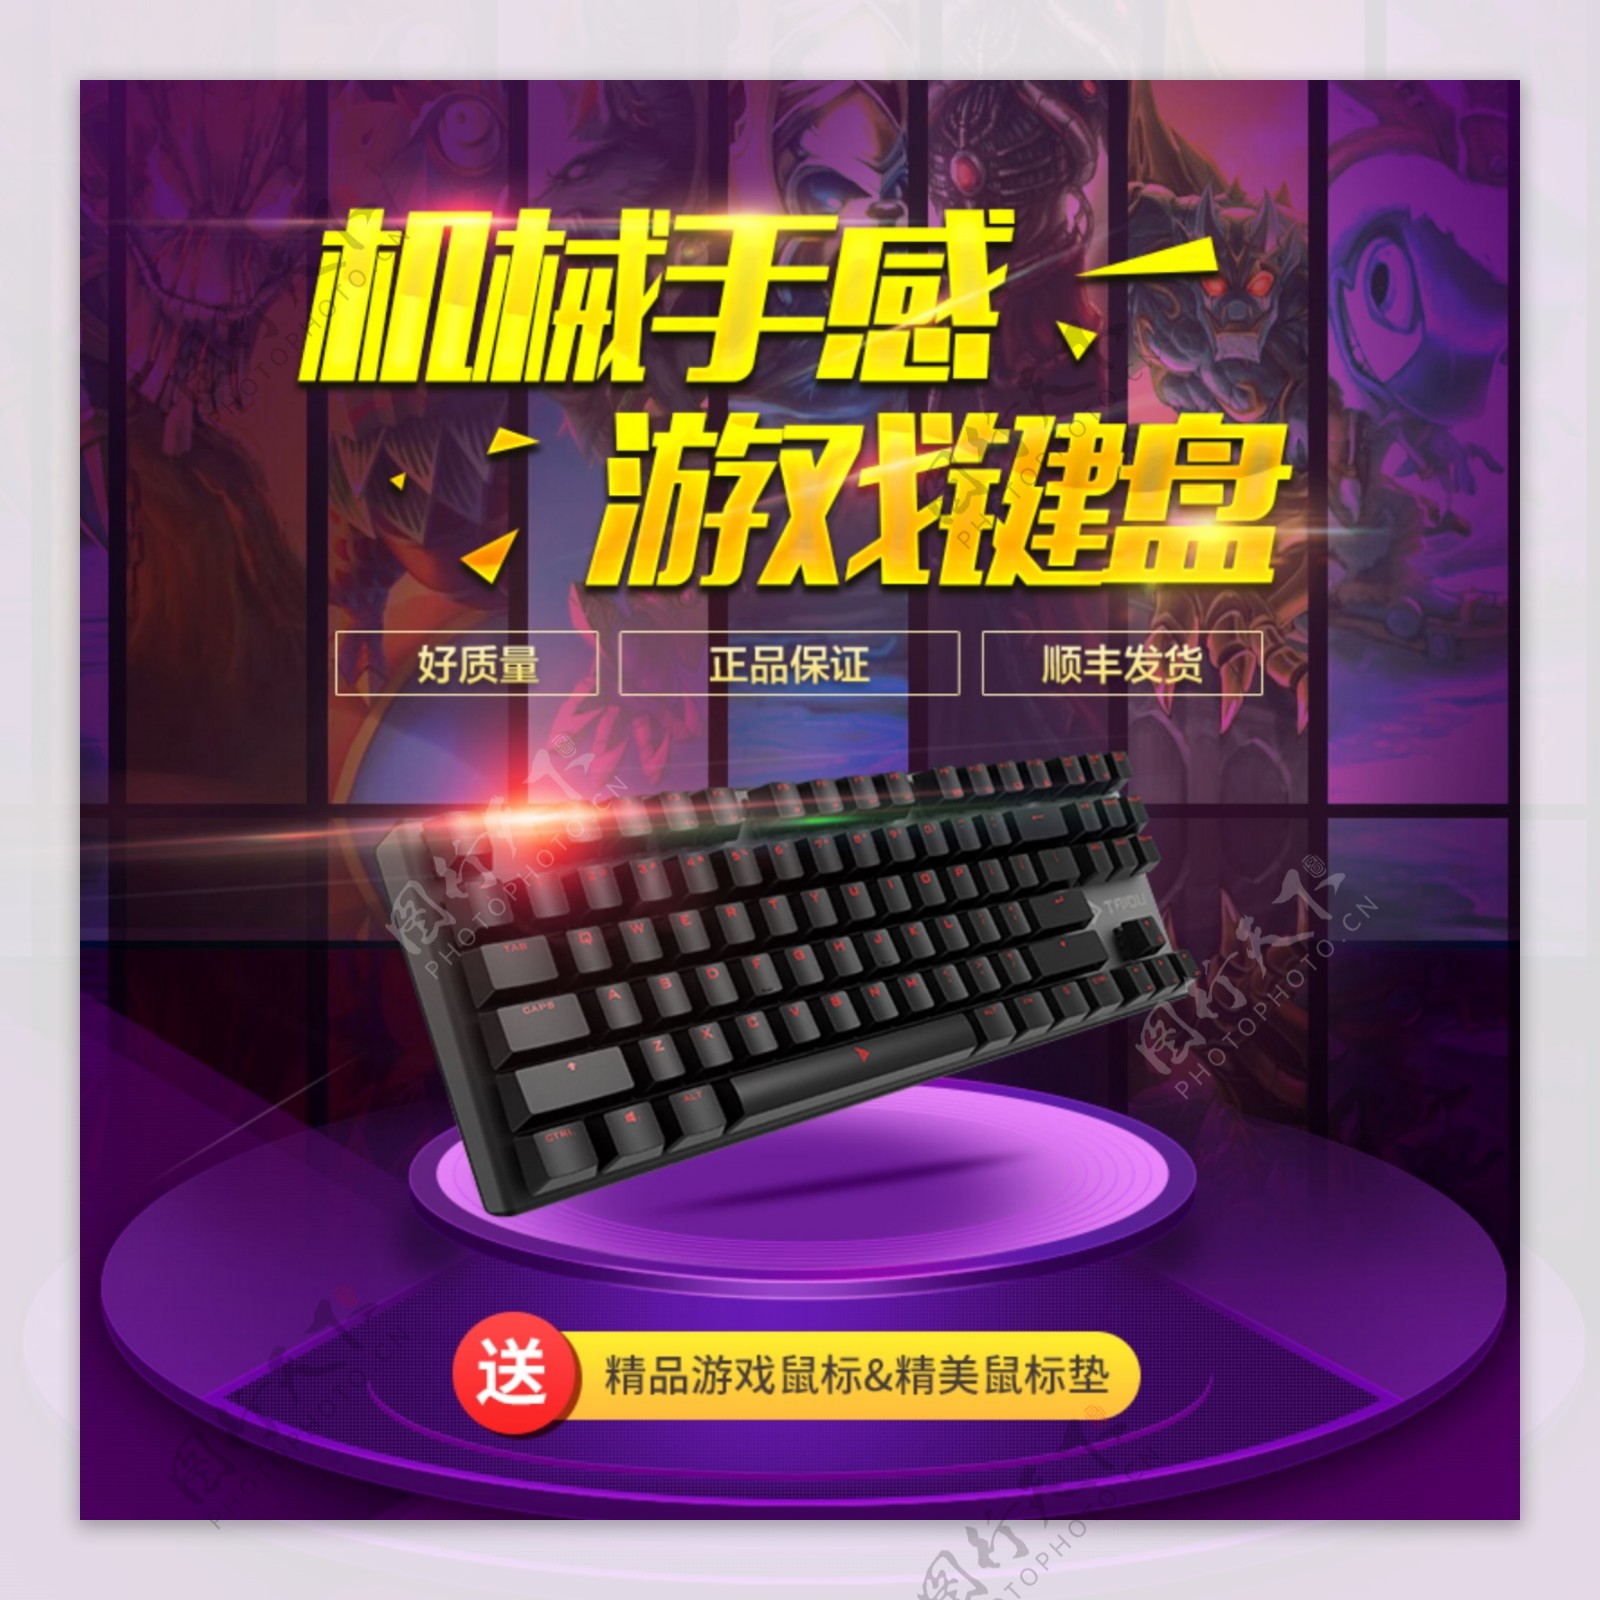 淘宝818暑期大促数码配件机械键盘炫酷直通车